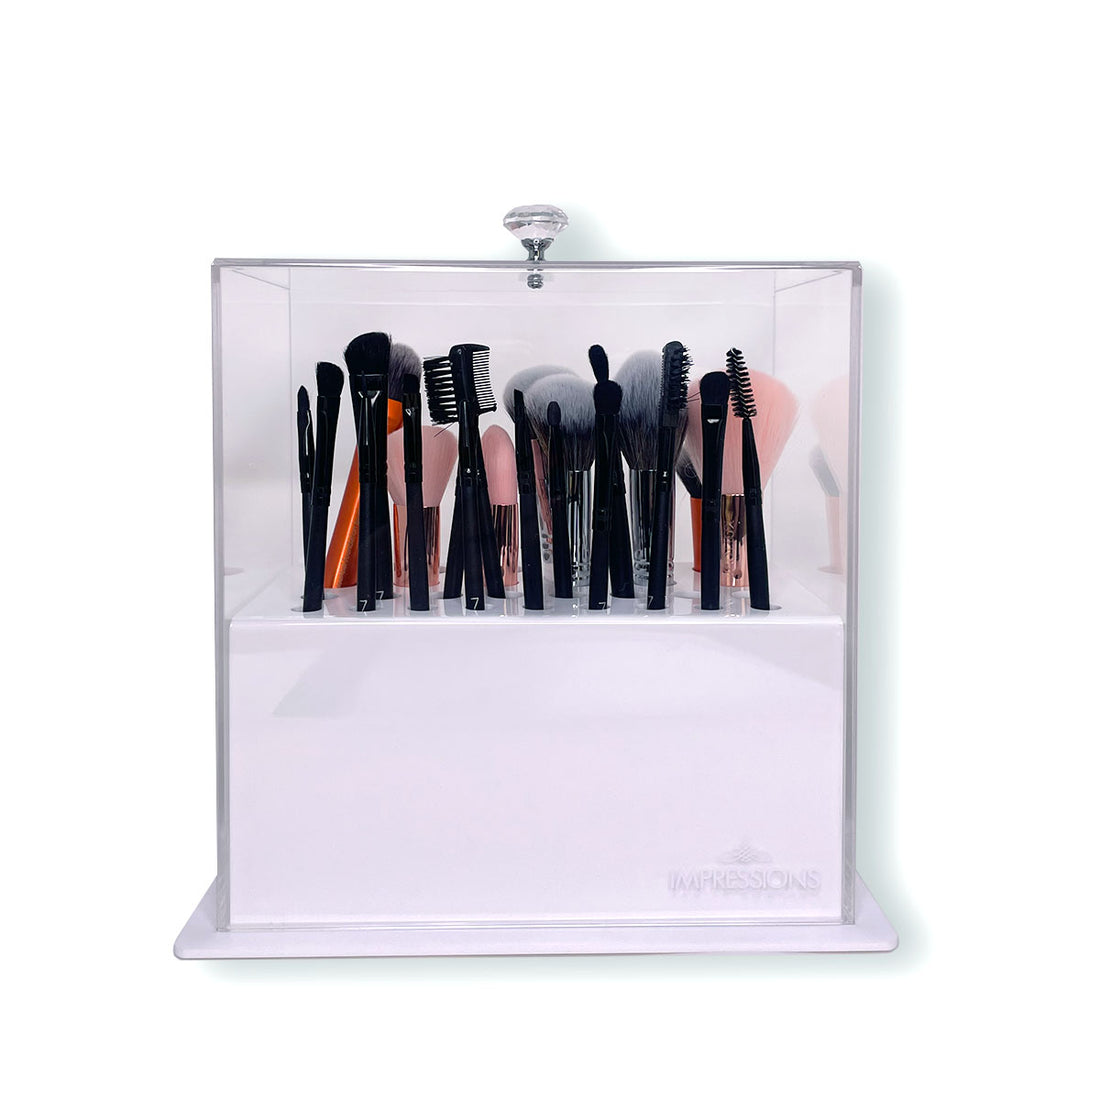 Diamond Collection Acrylic Makeup Brush Display Holder